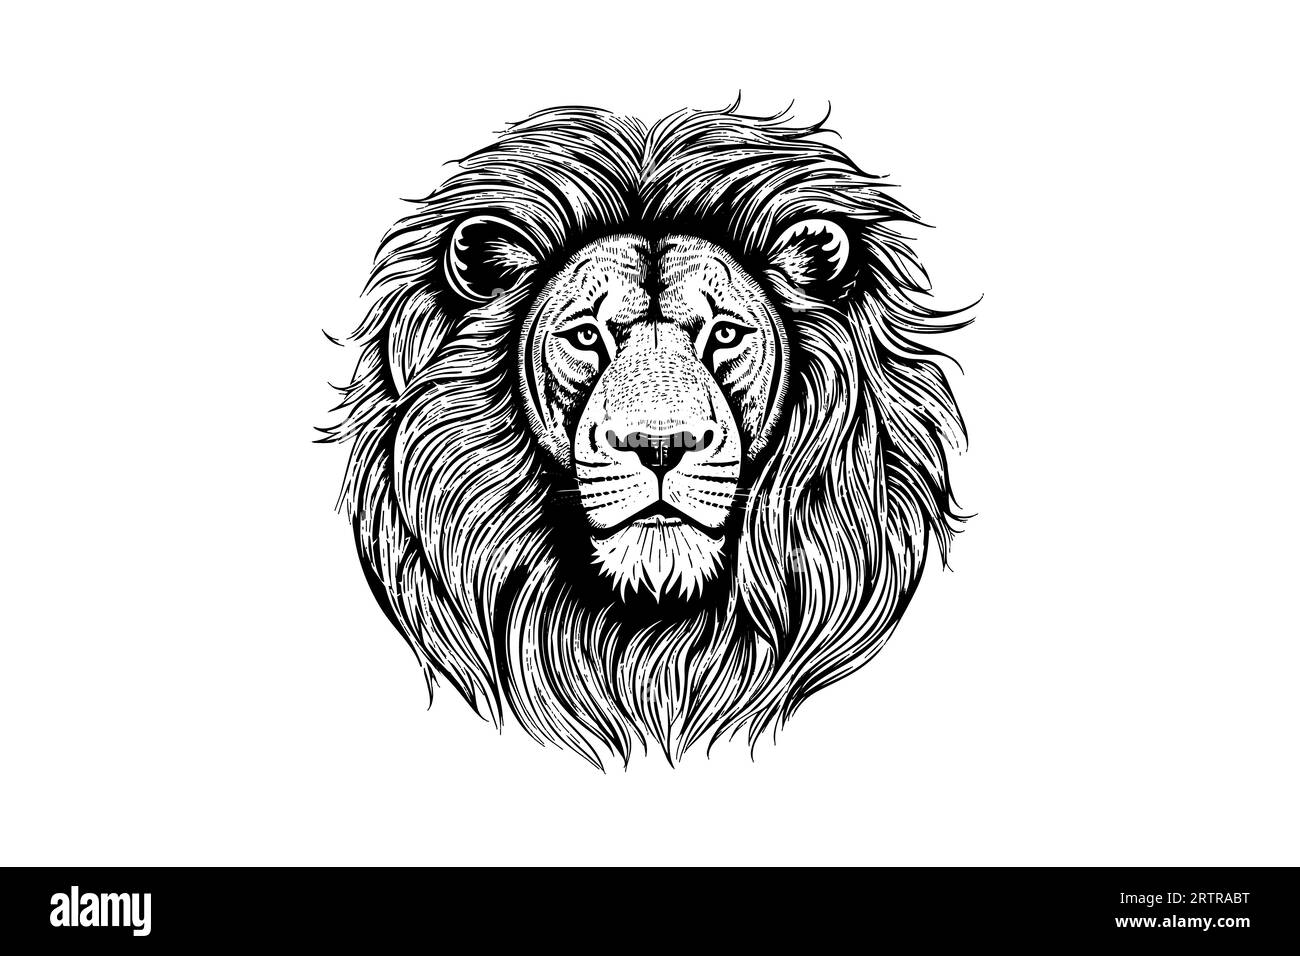 La tête de lion dessine à la main la gravure vintage illustration vectorielle noir et blanc sur fond blanc. Illustration de Vecteur